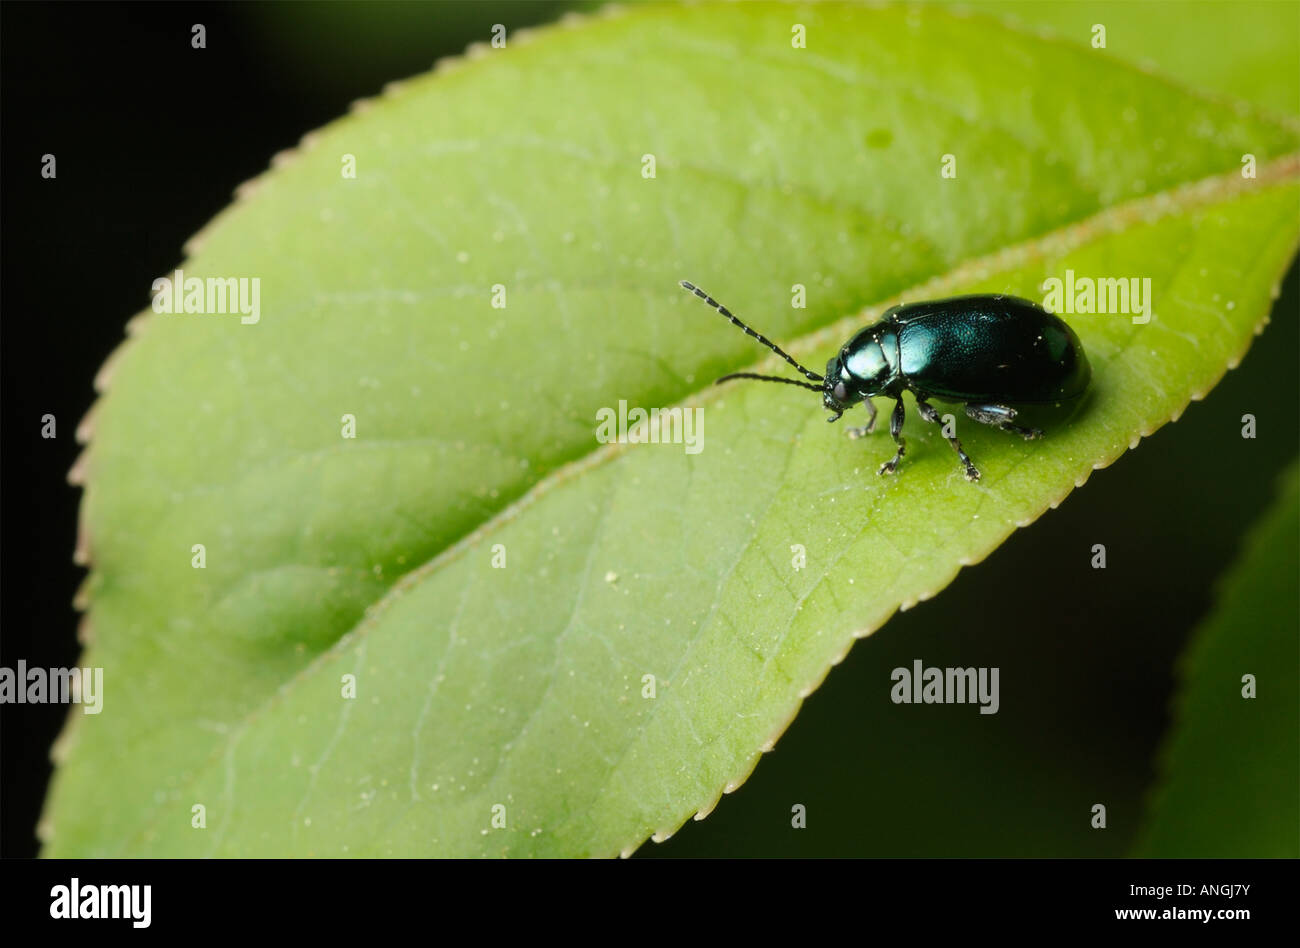 Skeletonizing leaf beetle Altica sp on a leaf Stock Photo